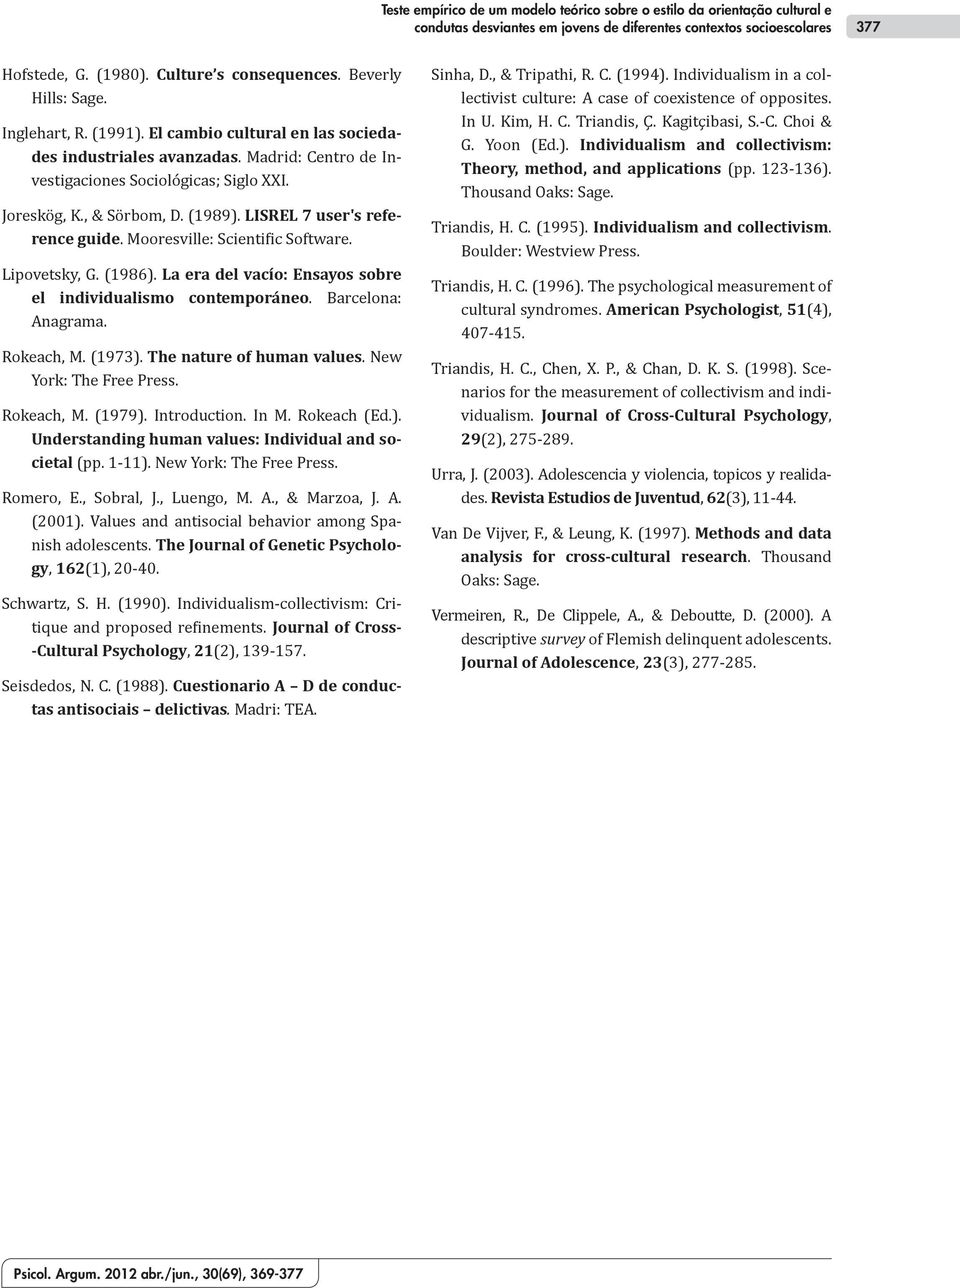 LISREL 7 user's reference guide. Mooresville: Scientific Software. Lipovetsky, G. (1986). La era del vacío: Ensayos sobre el individualismo contemporáneo. Barcelona: Anagrama. Rokeach, M. (1973).